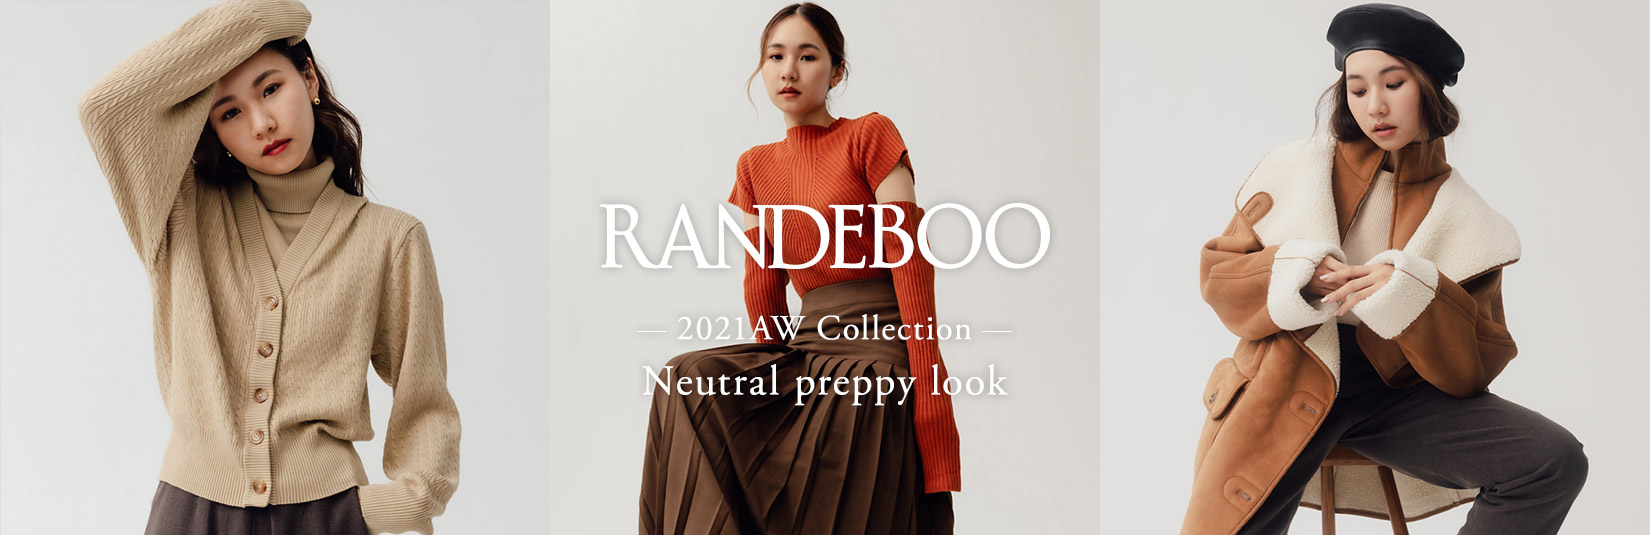 RANDEBOO 2021AW Collection  -Neutral preppy look-